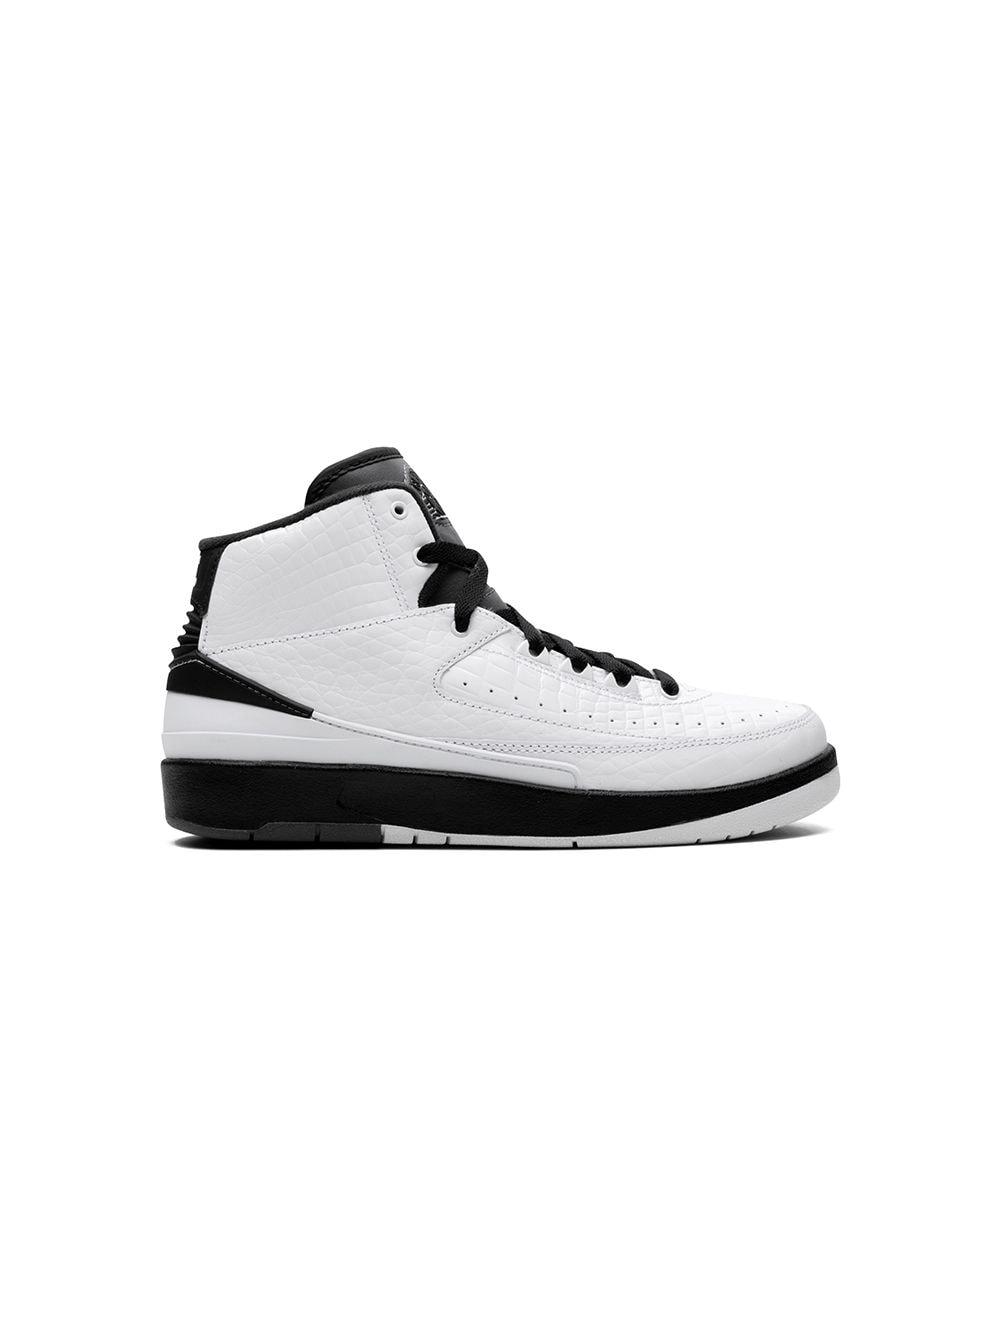 Nike Kids Air Jordan 2 Retro BG (834283 